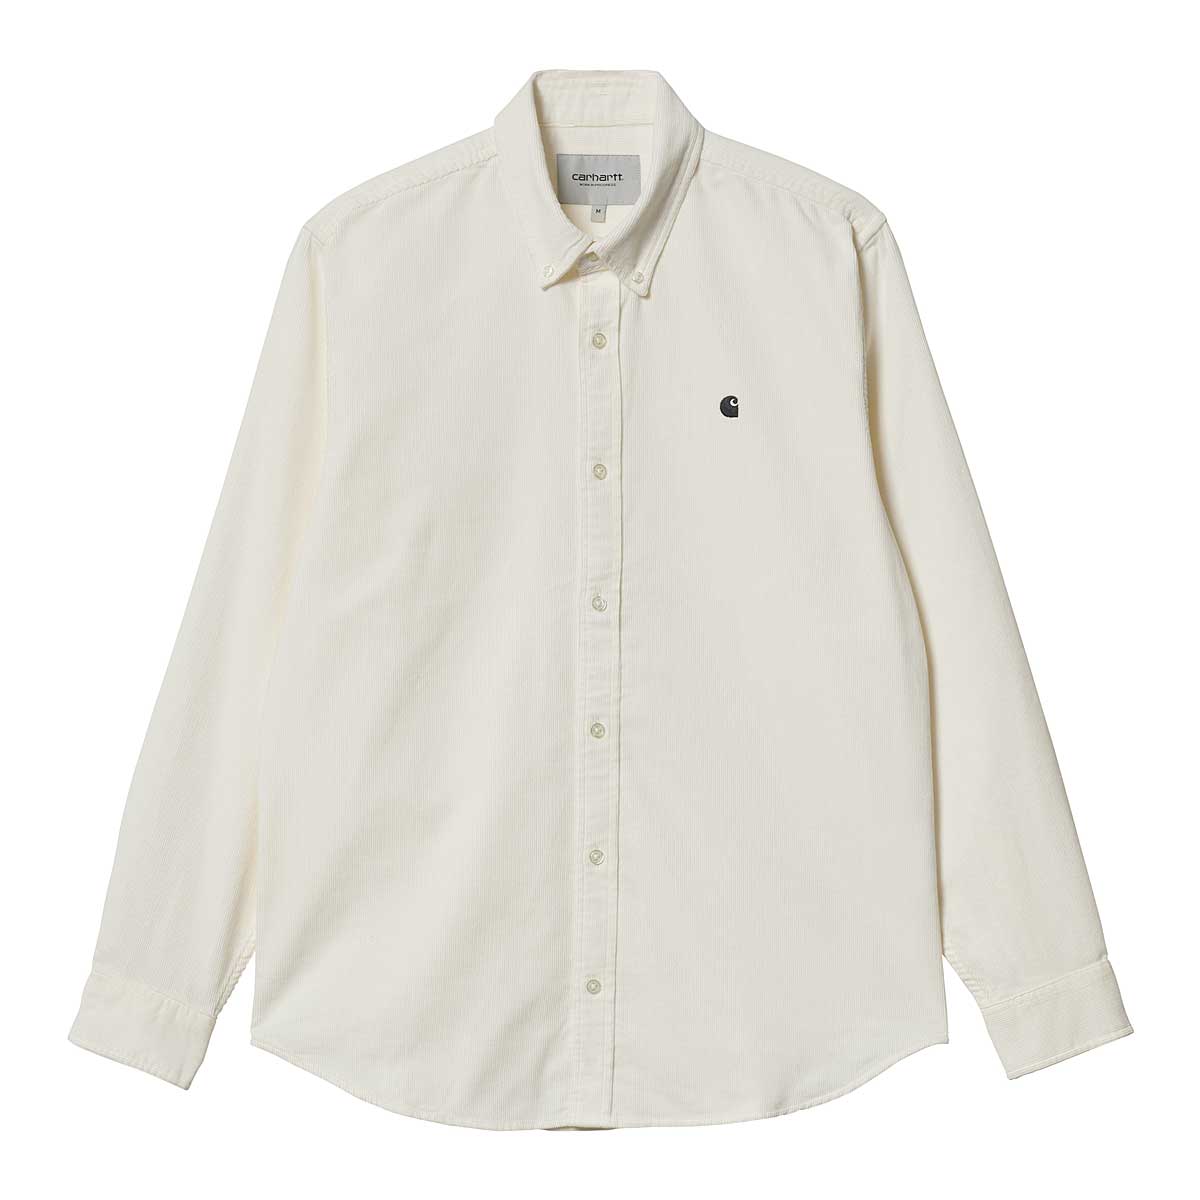 Carhartt Wip L/S Madison Fine Cord Shirt, Wax / Black